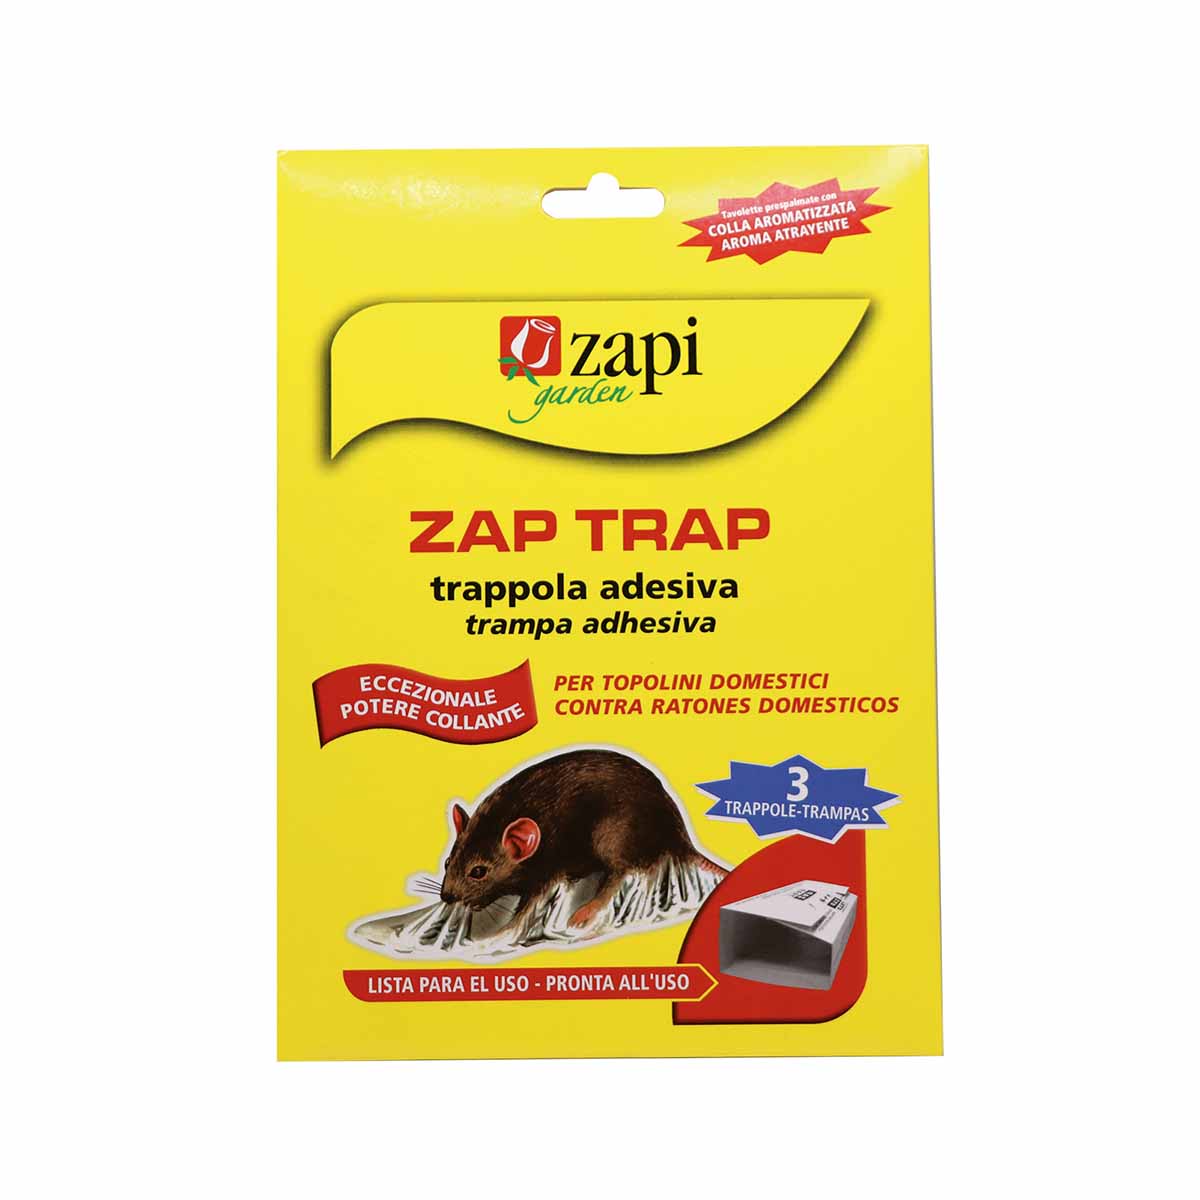 Zapi Zap Trap